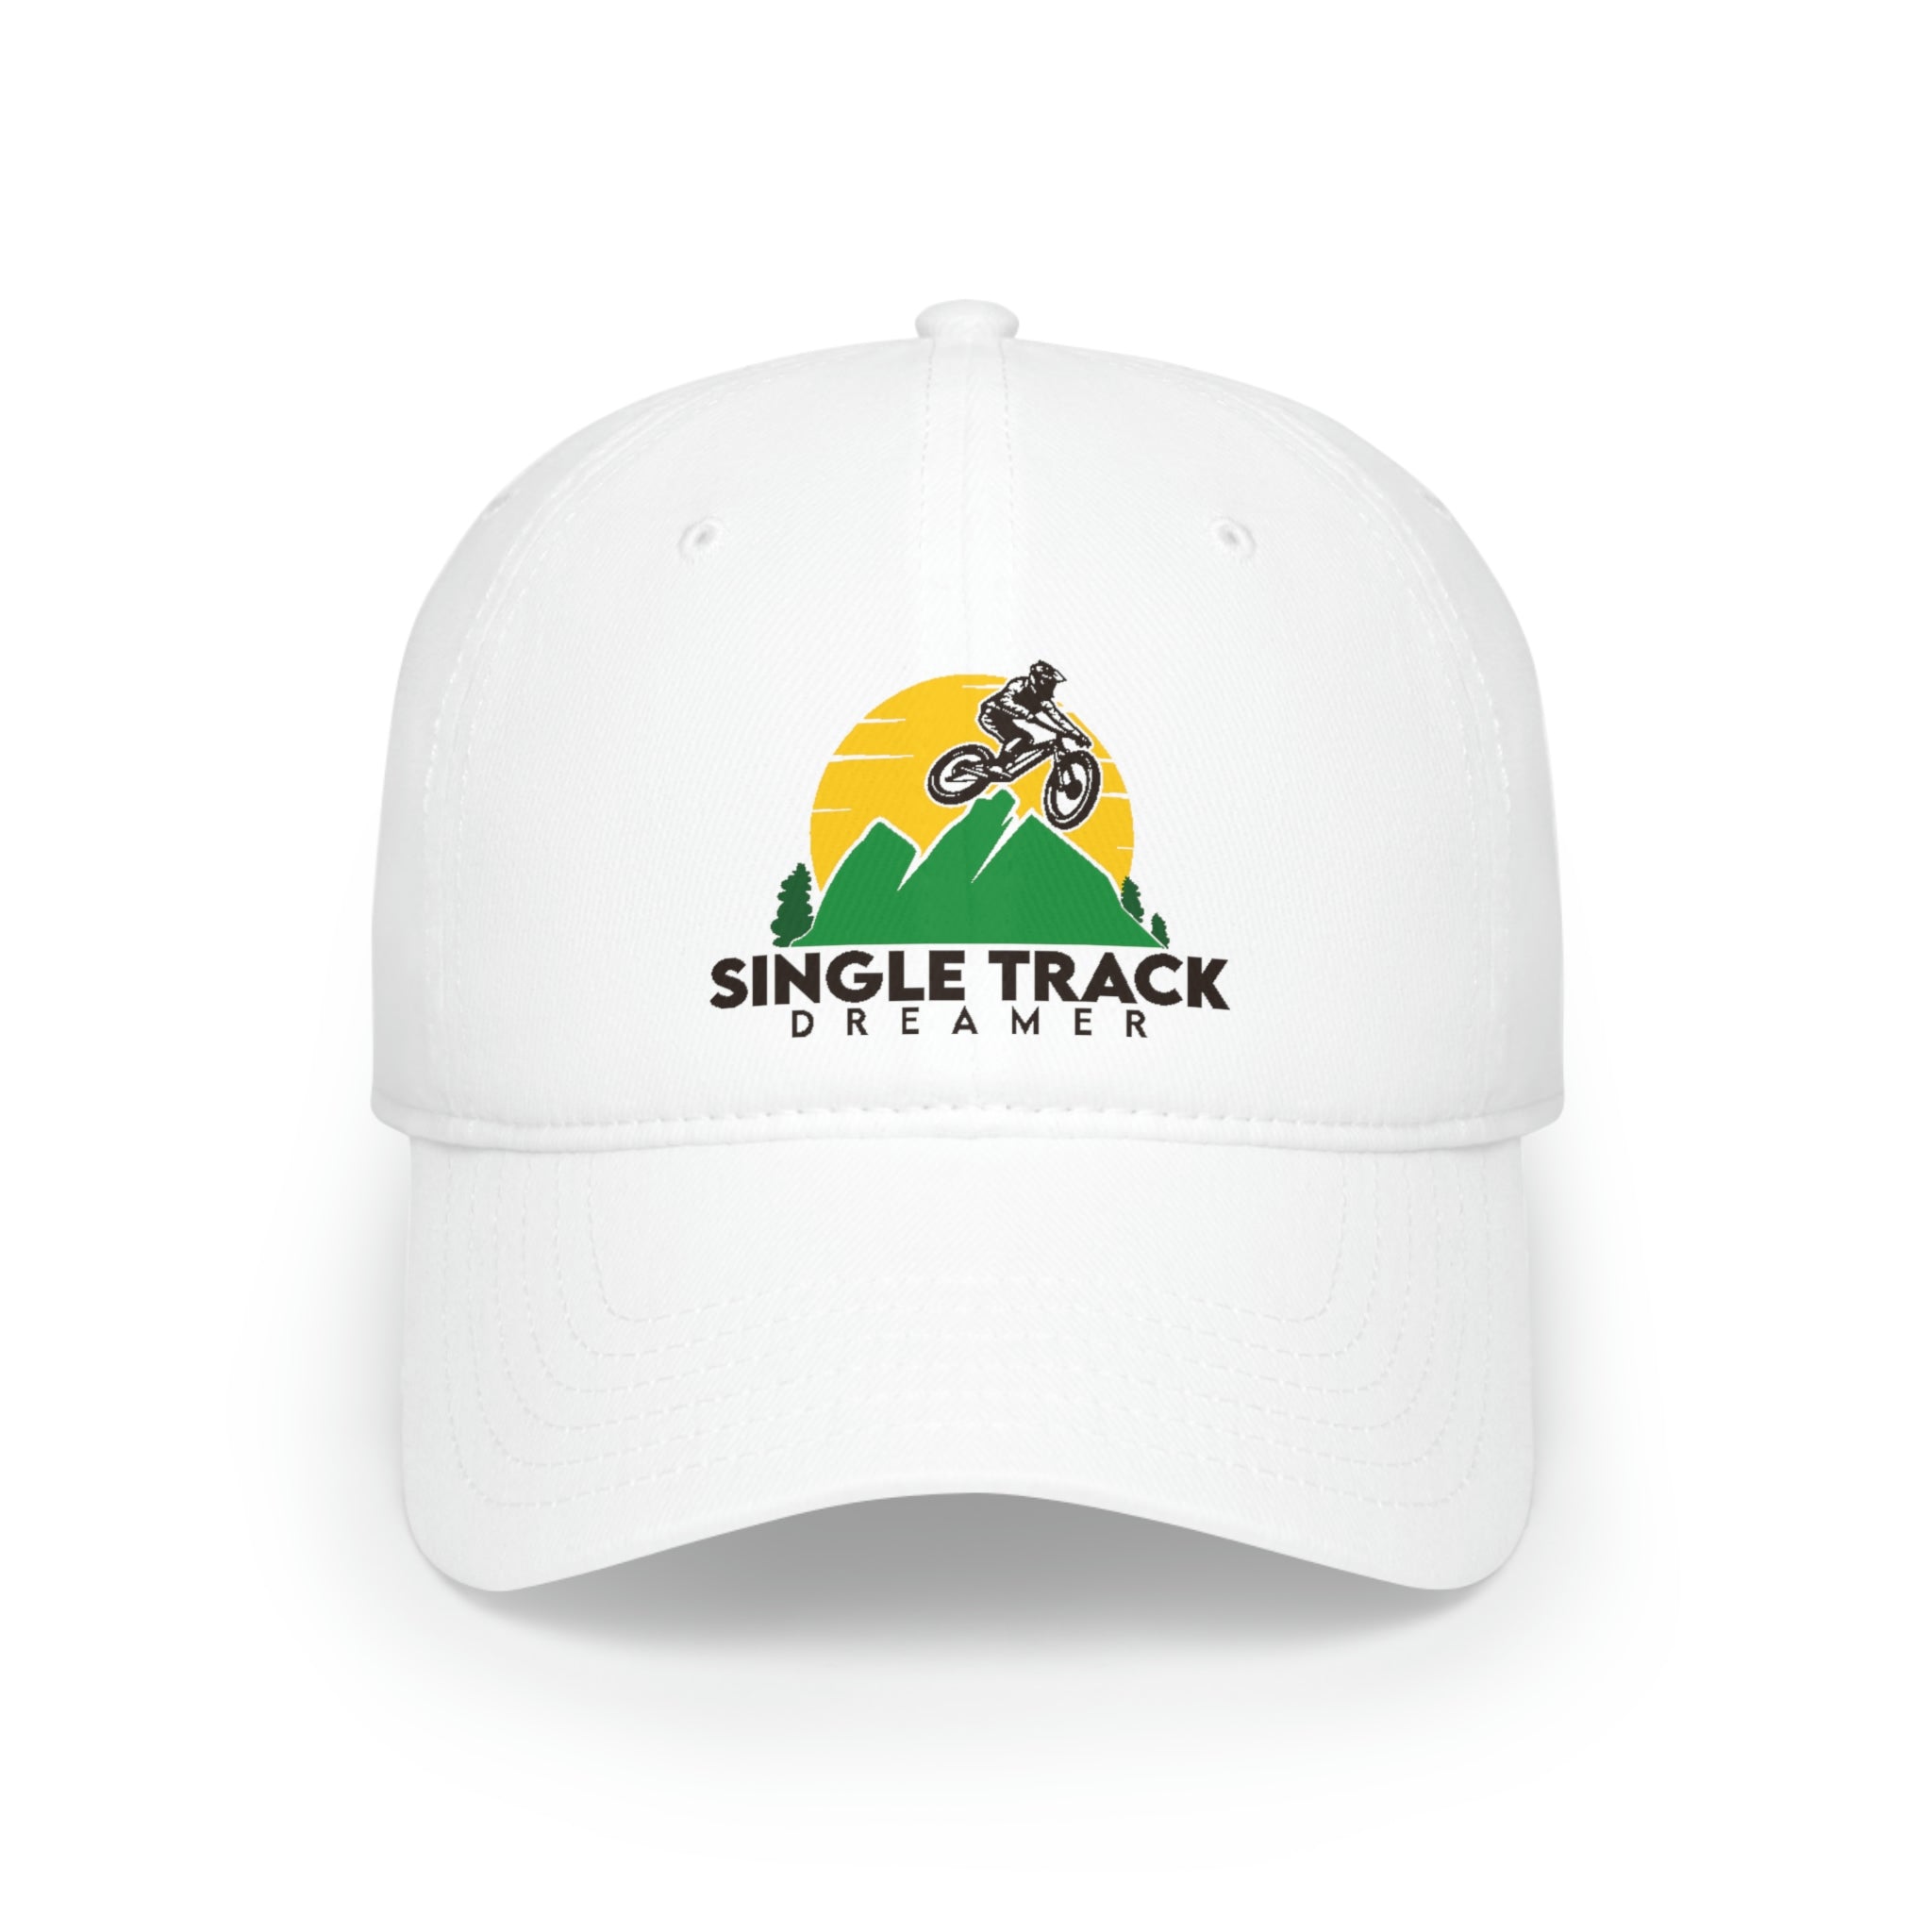 BASEBALL CAP | SINGLE TRACK DREAMER LOGO | WHITE | ADJUSTABLE VELCRO STRAP - Single Track Dreamer